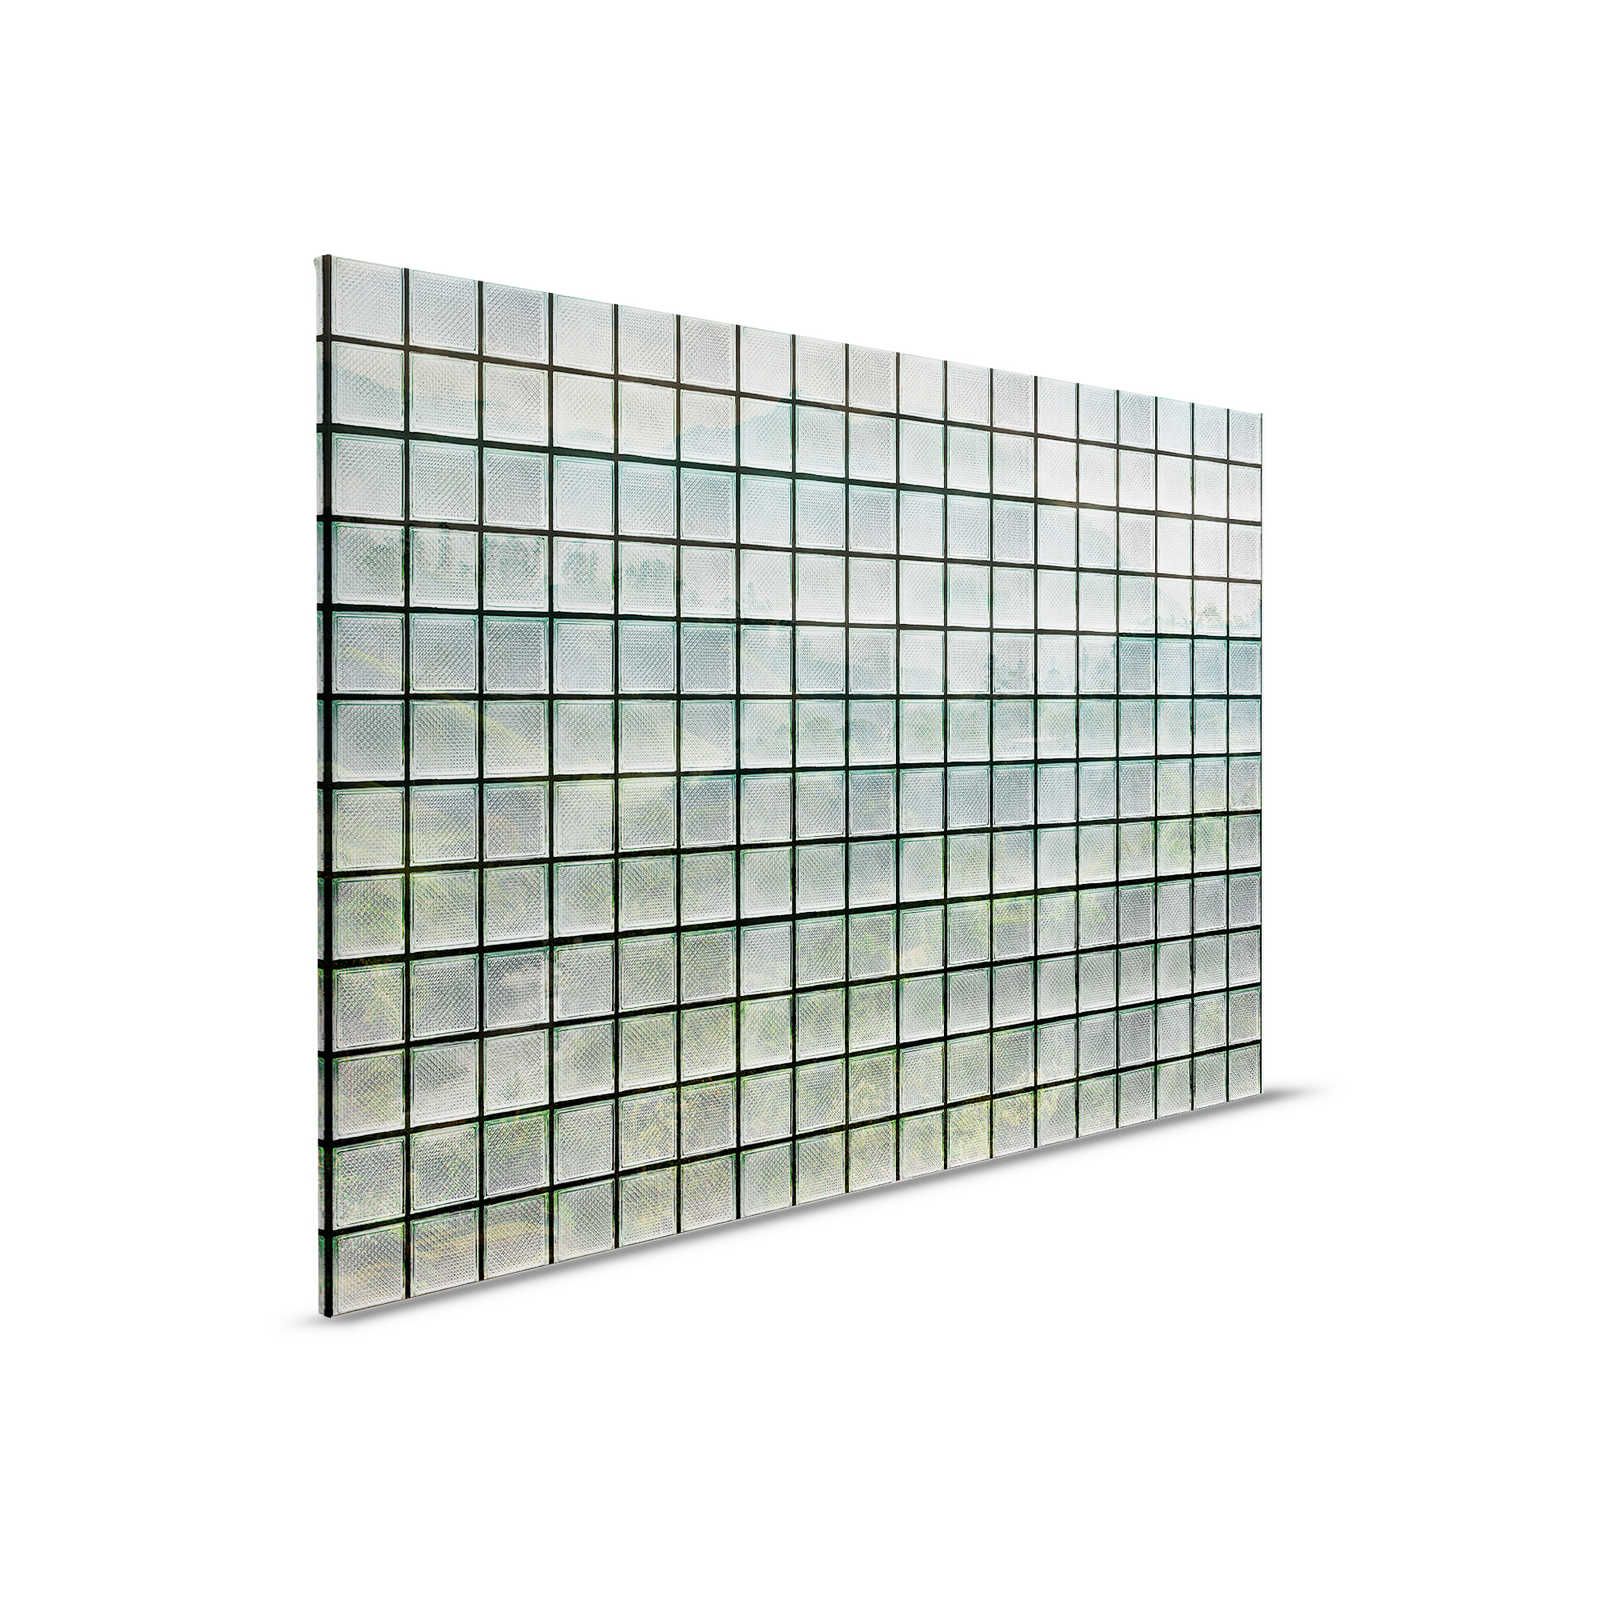         Green House 3 - Fenster Leinwandbild Glasbausteine & tropischer Wald – 0,90 m x 0,60 m
    